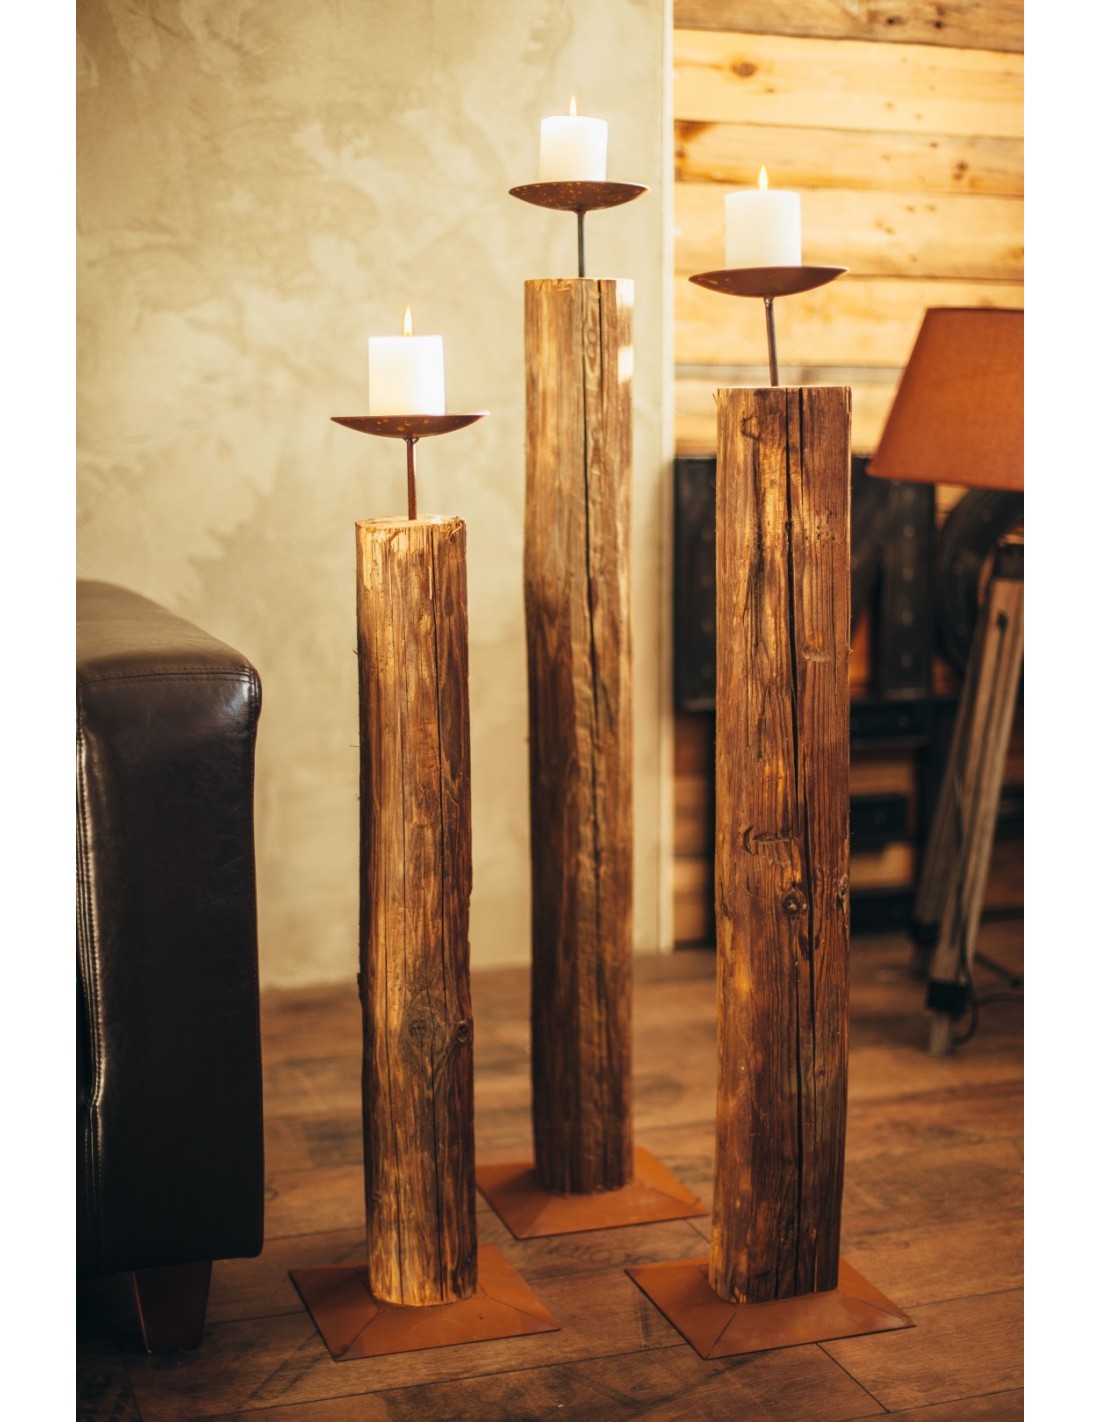 Altholz Kerzenständer- große Variante zwischen 105-115 cm hoch - Ø 15 cm